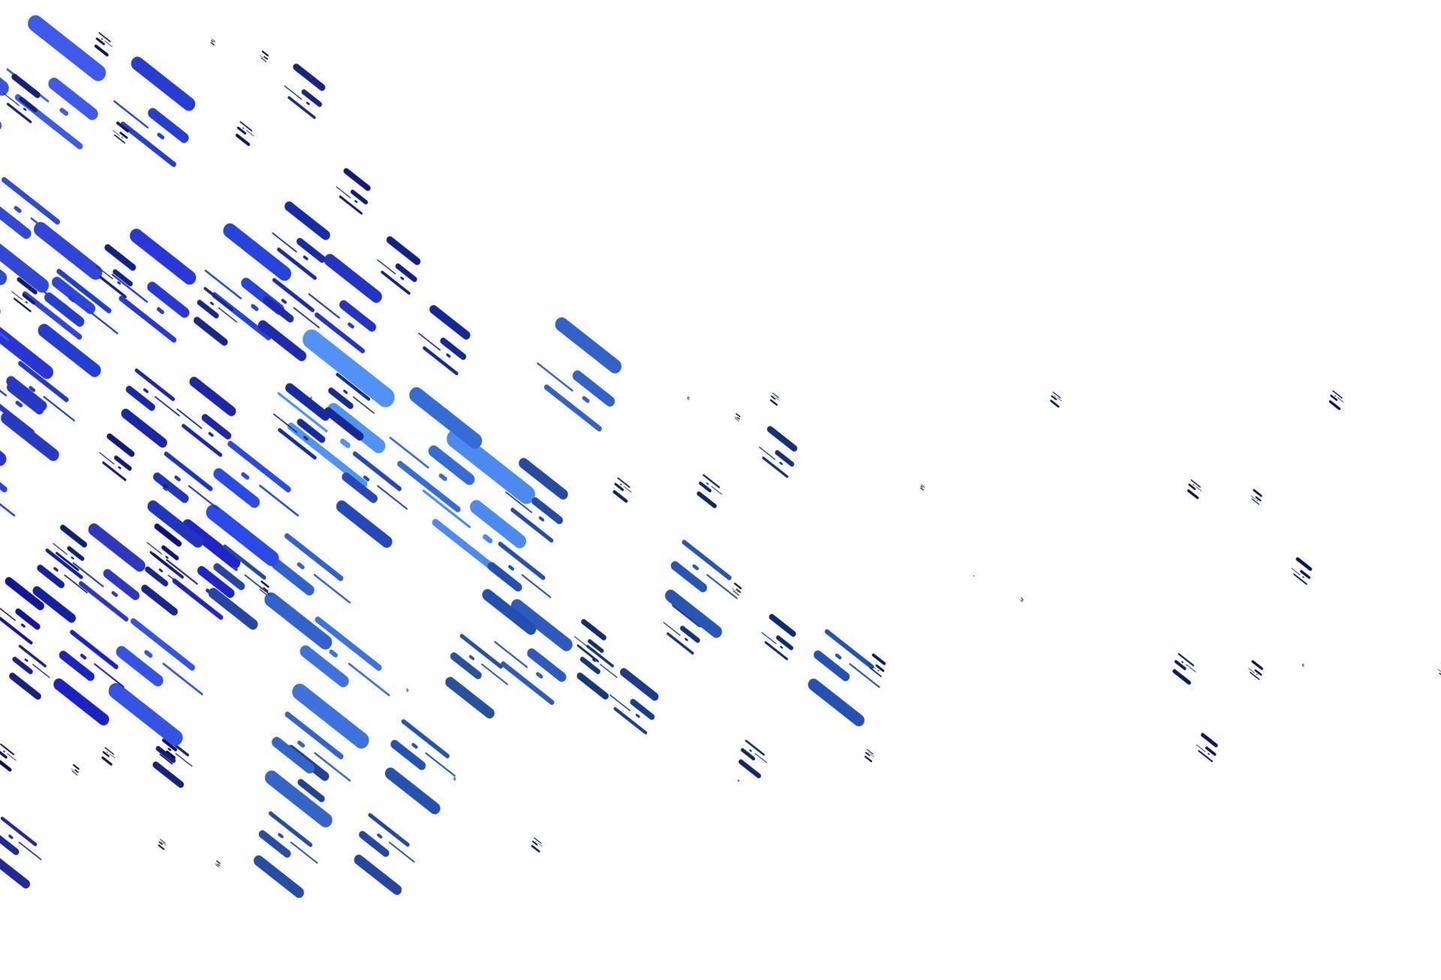 ljusblå vektorbakgrund med raka linjer. vektor